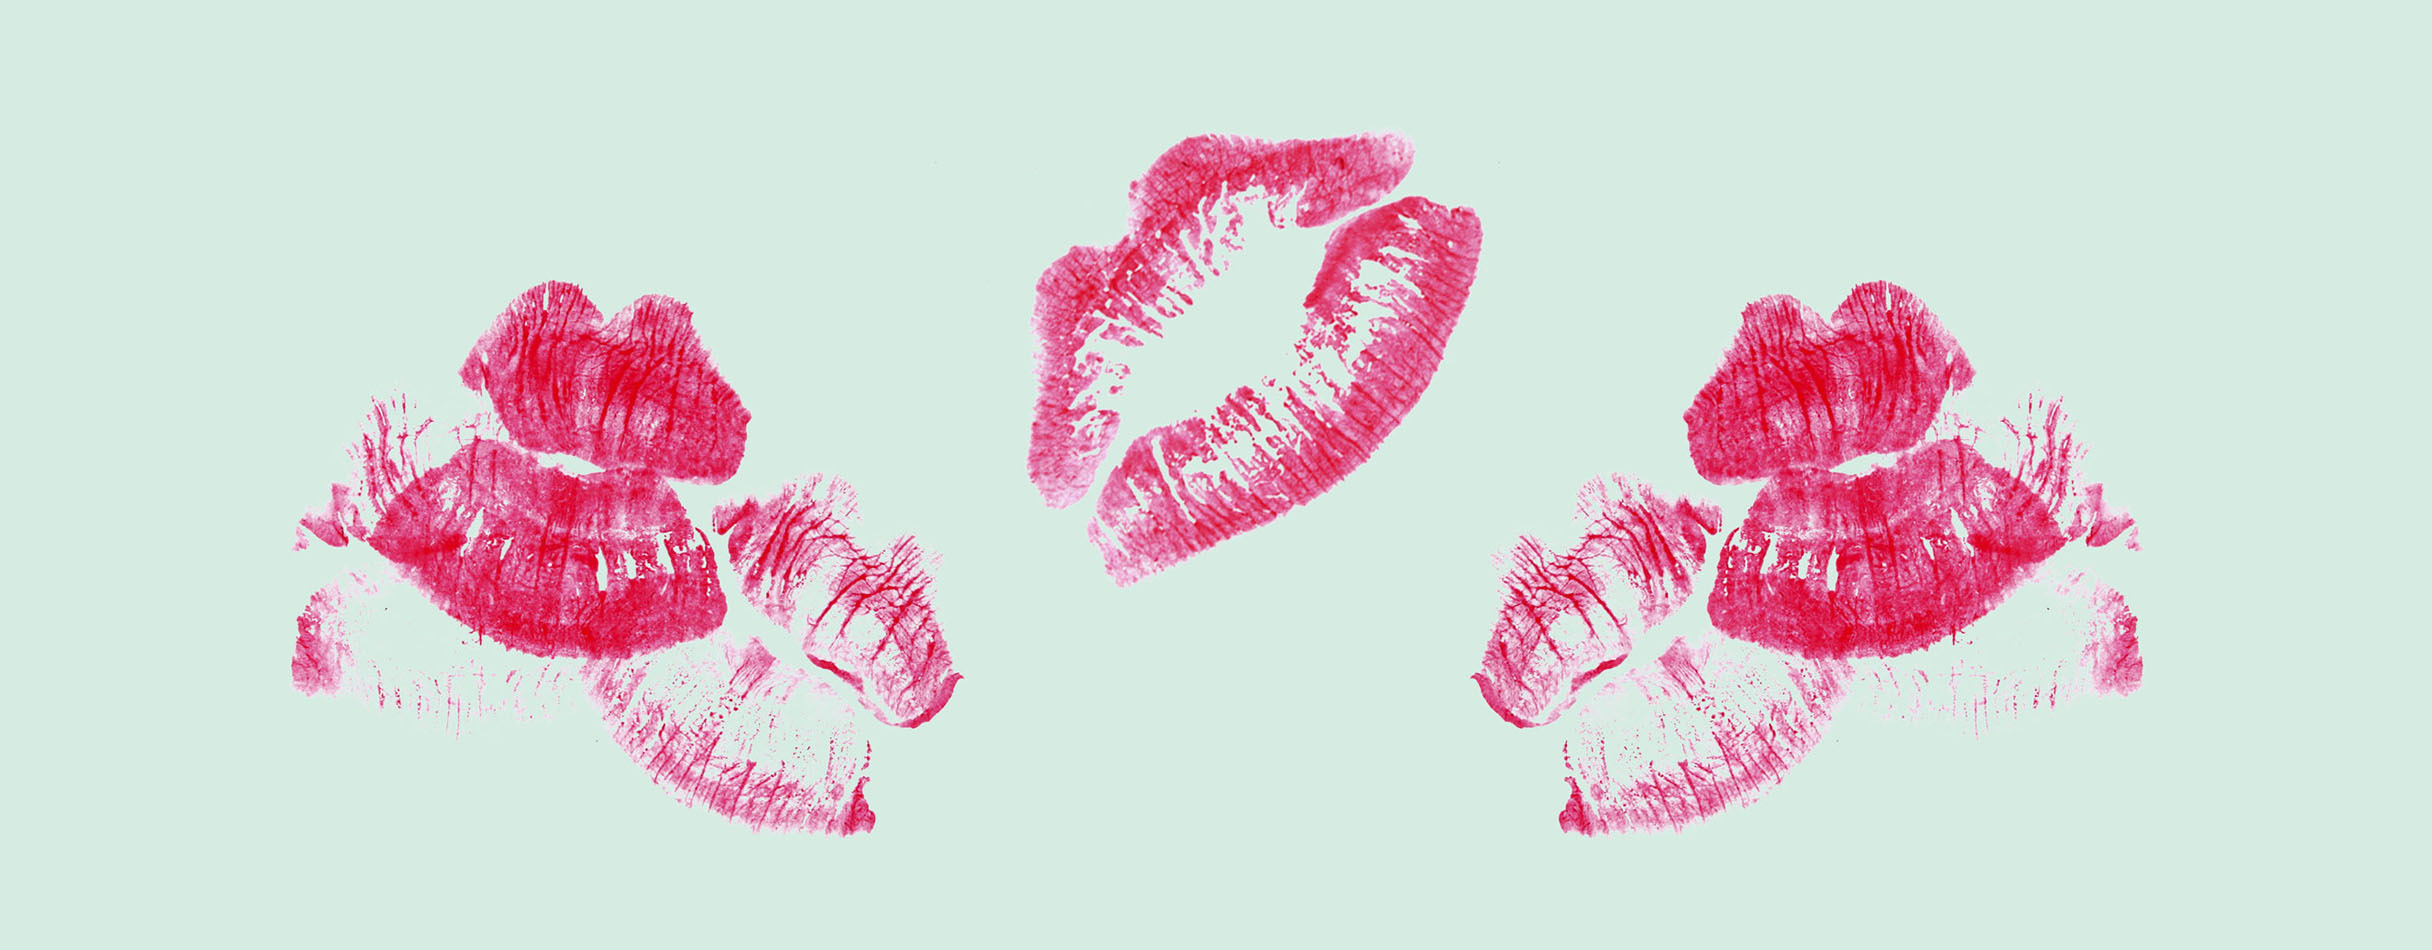 Cómo besar mejor | 10 tipos de besos